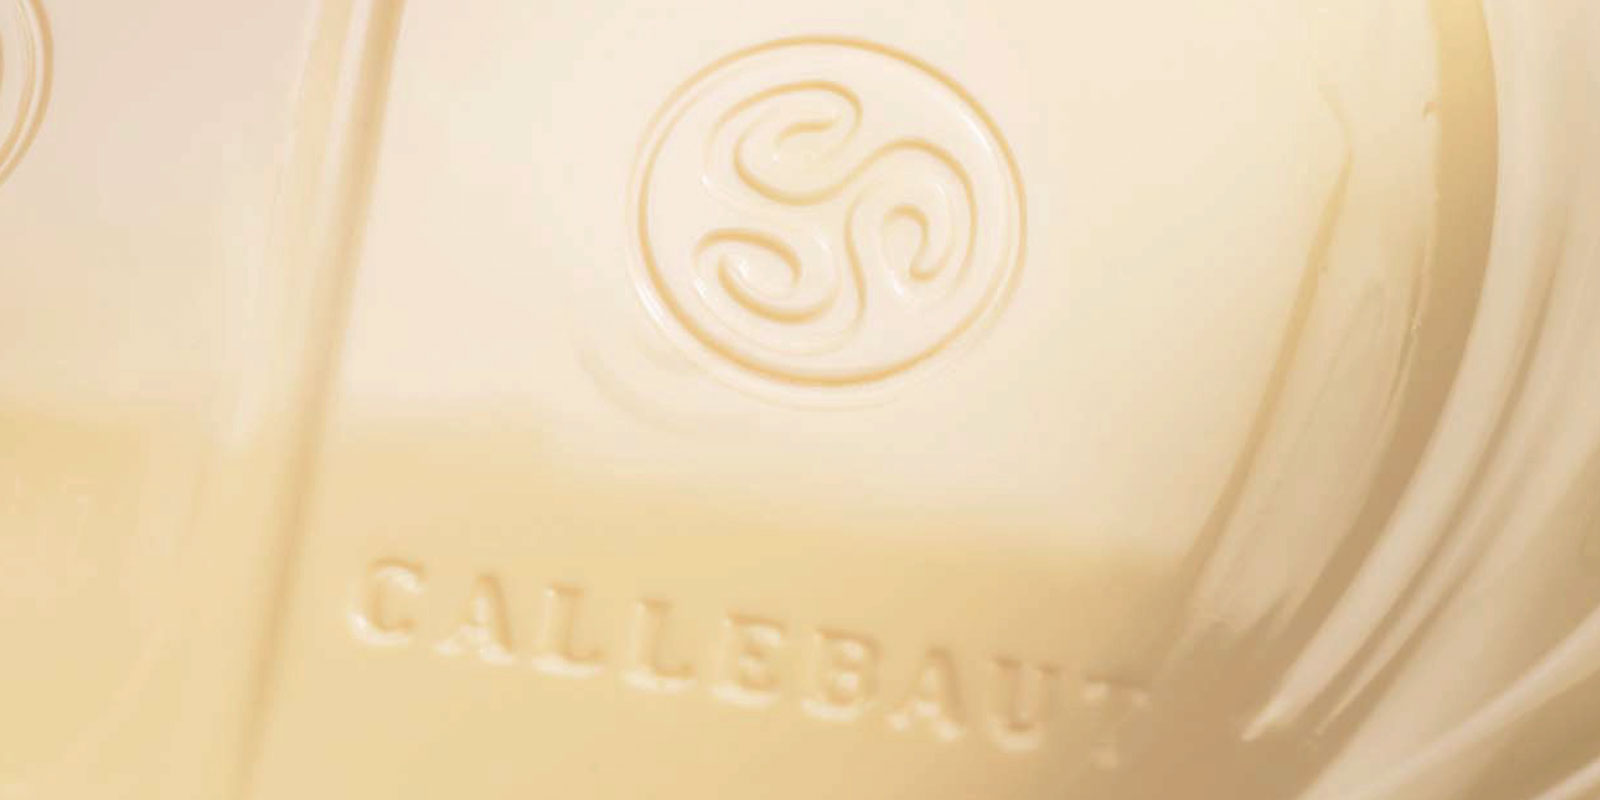 Witte chocolade van Callebaut Witte chocolade is het resultaat van het mengen van cacaoboter, melkpoeder en suiker. De mengverhouding van deze ingredienten ? bijvoorbeeld vanilline, vanille of lecithine ? bepaalt de smaak van het eindproduct.